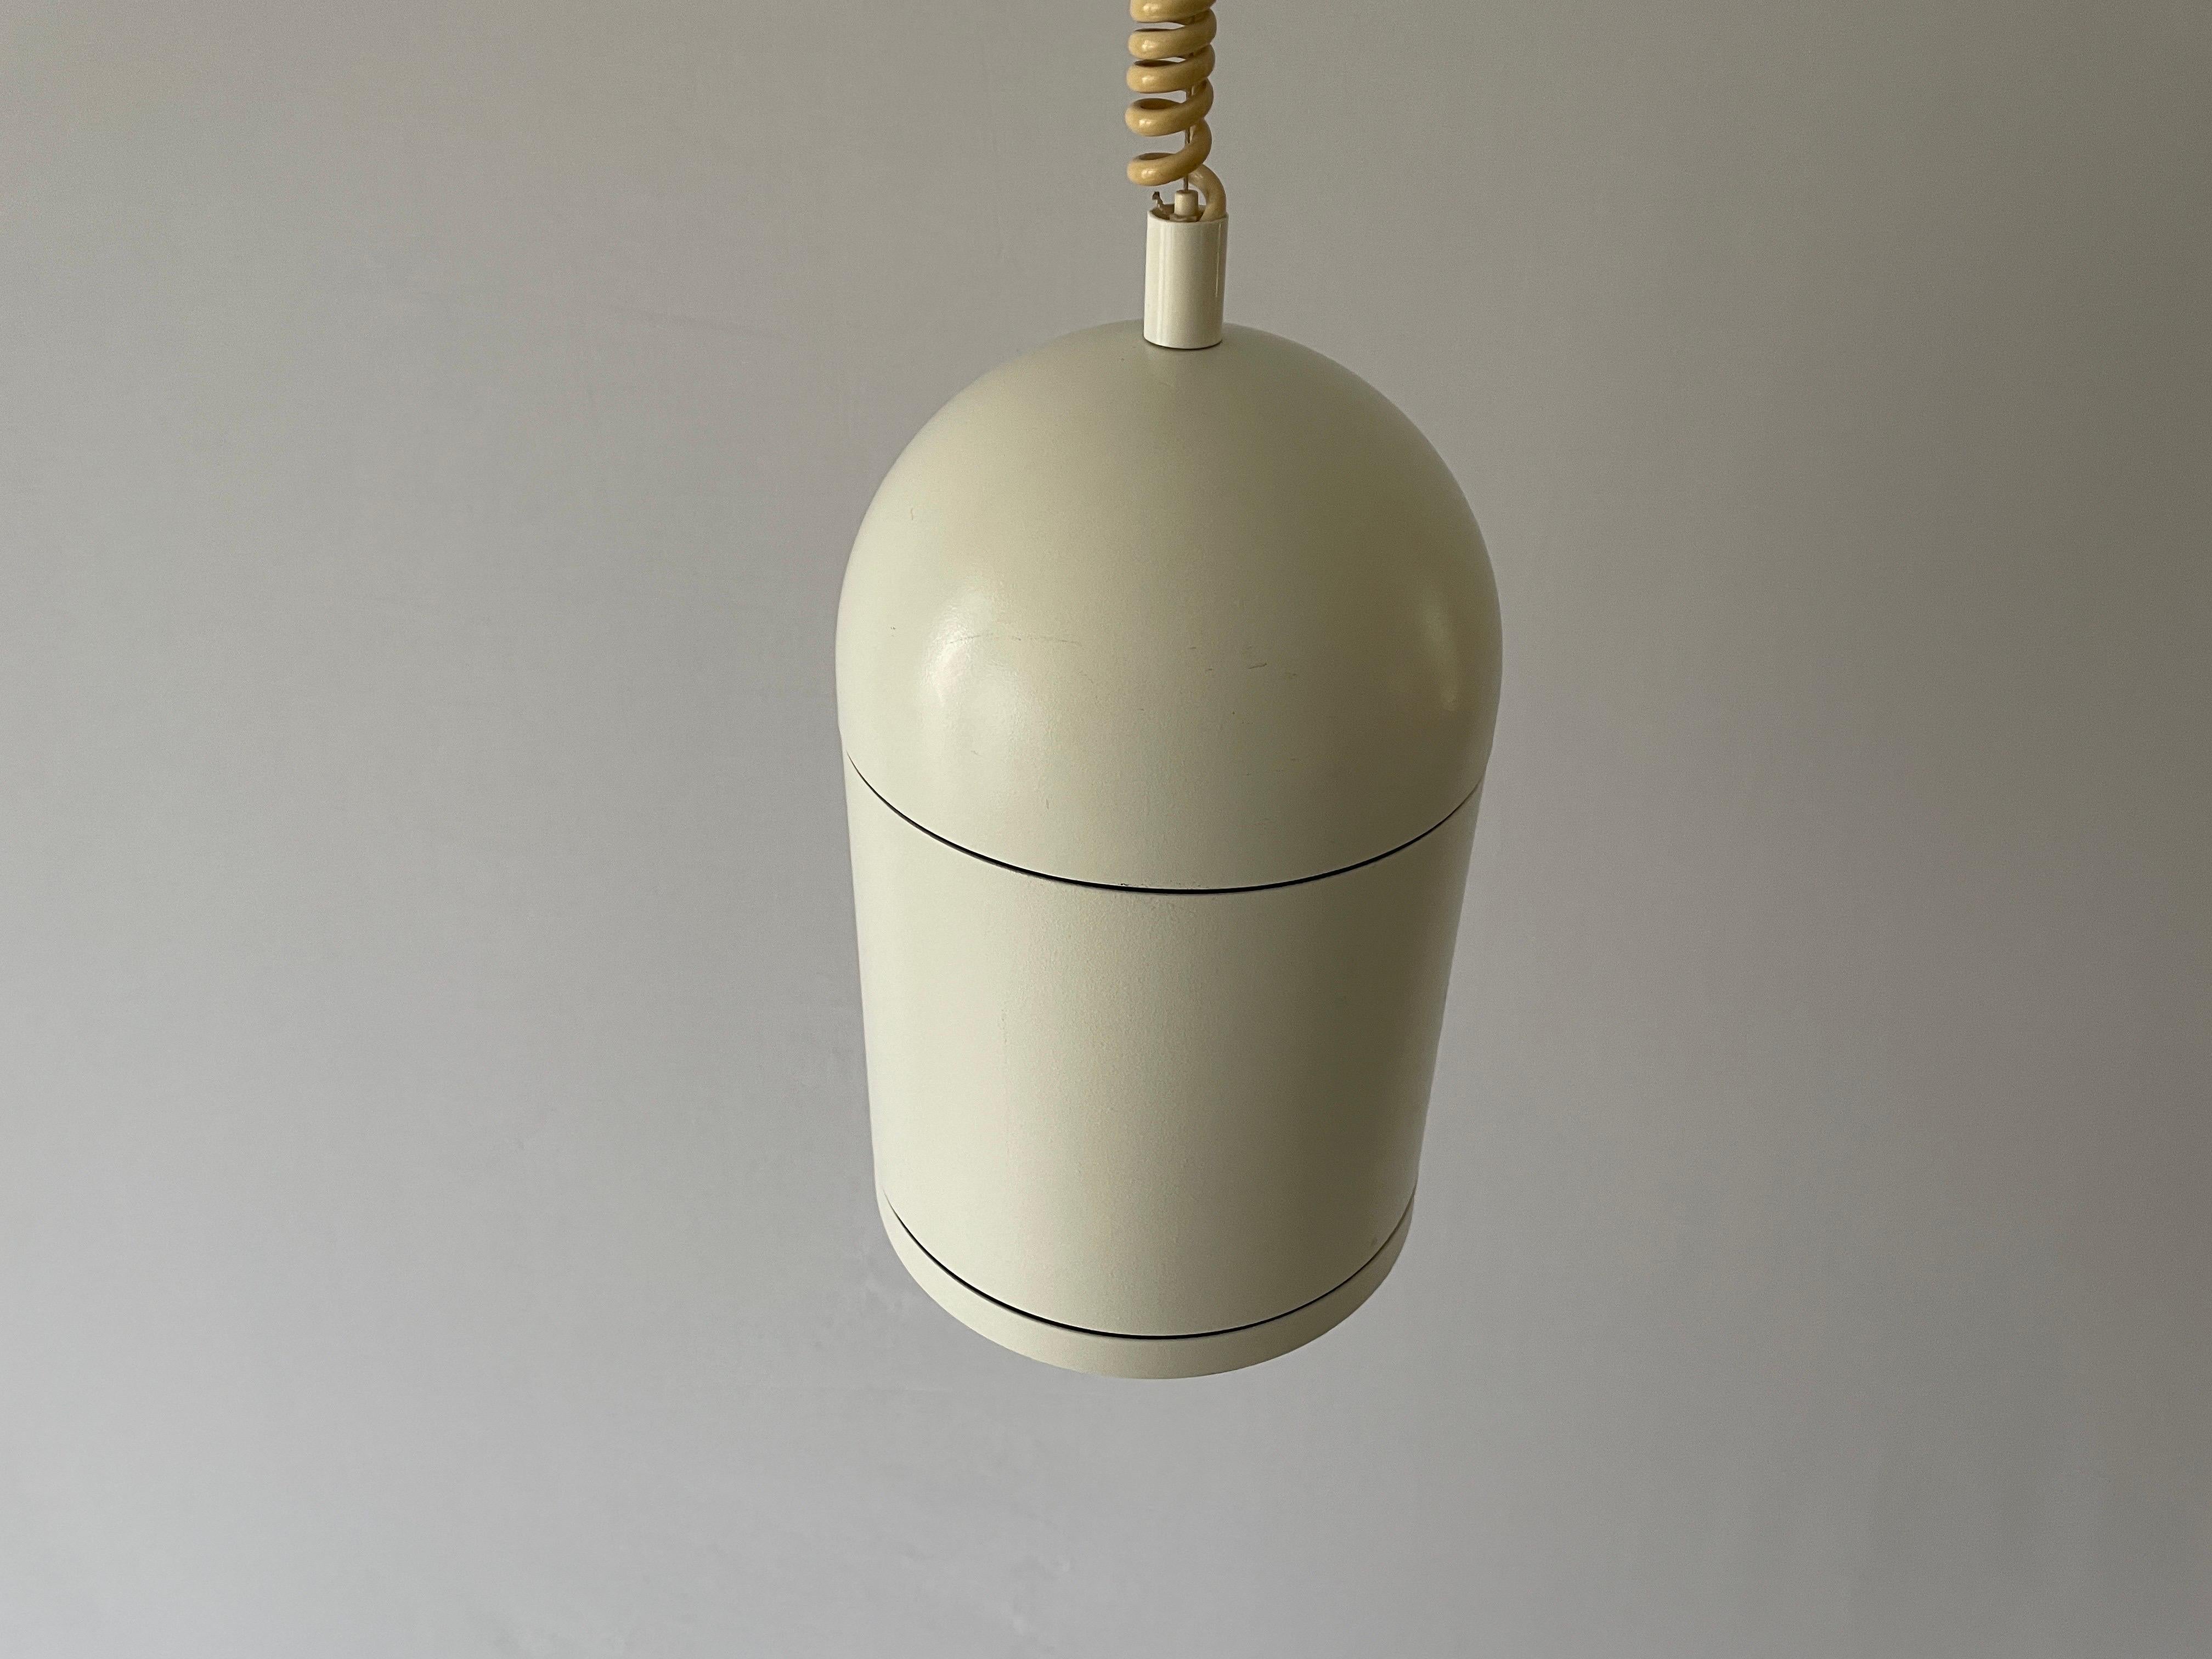 Verstellbare Pendelleuchte aus weißem Metall von BEGA, 1960er Jahre, Deutschland

Die Lampe ist in einem sehr guten Vintage-Zustand.
Abnutzung entsprechend dem Alter und dem Gebrauch

Diese Lampe funktioniert mit fluoreszierenden